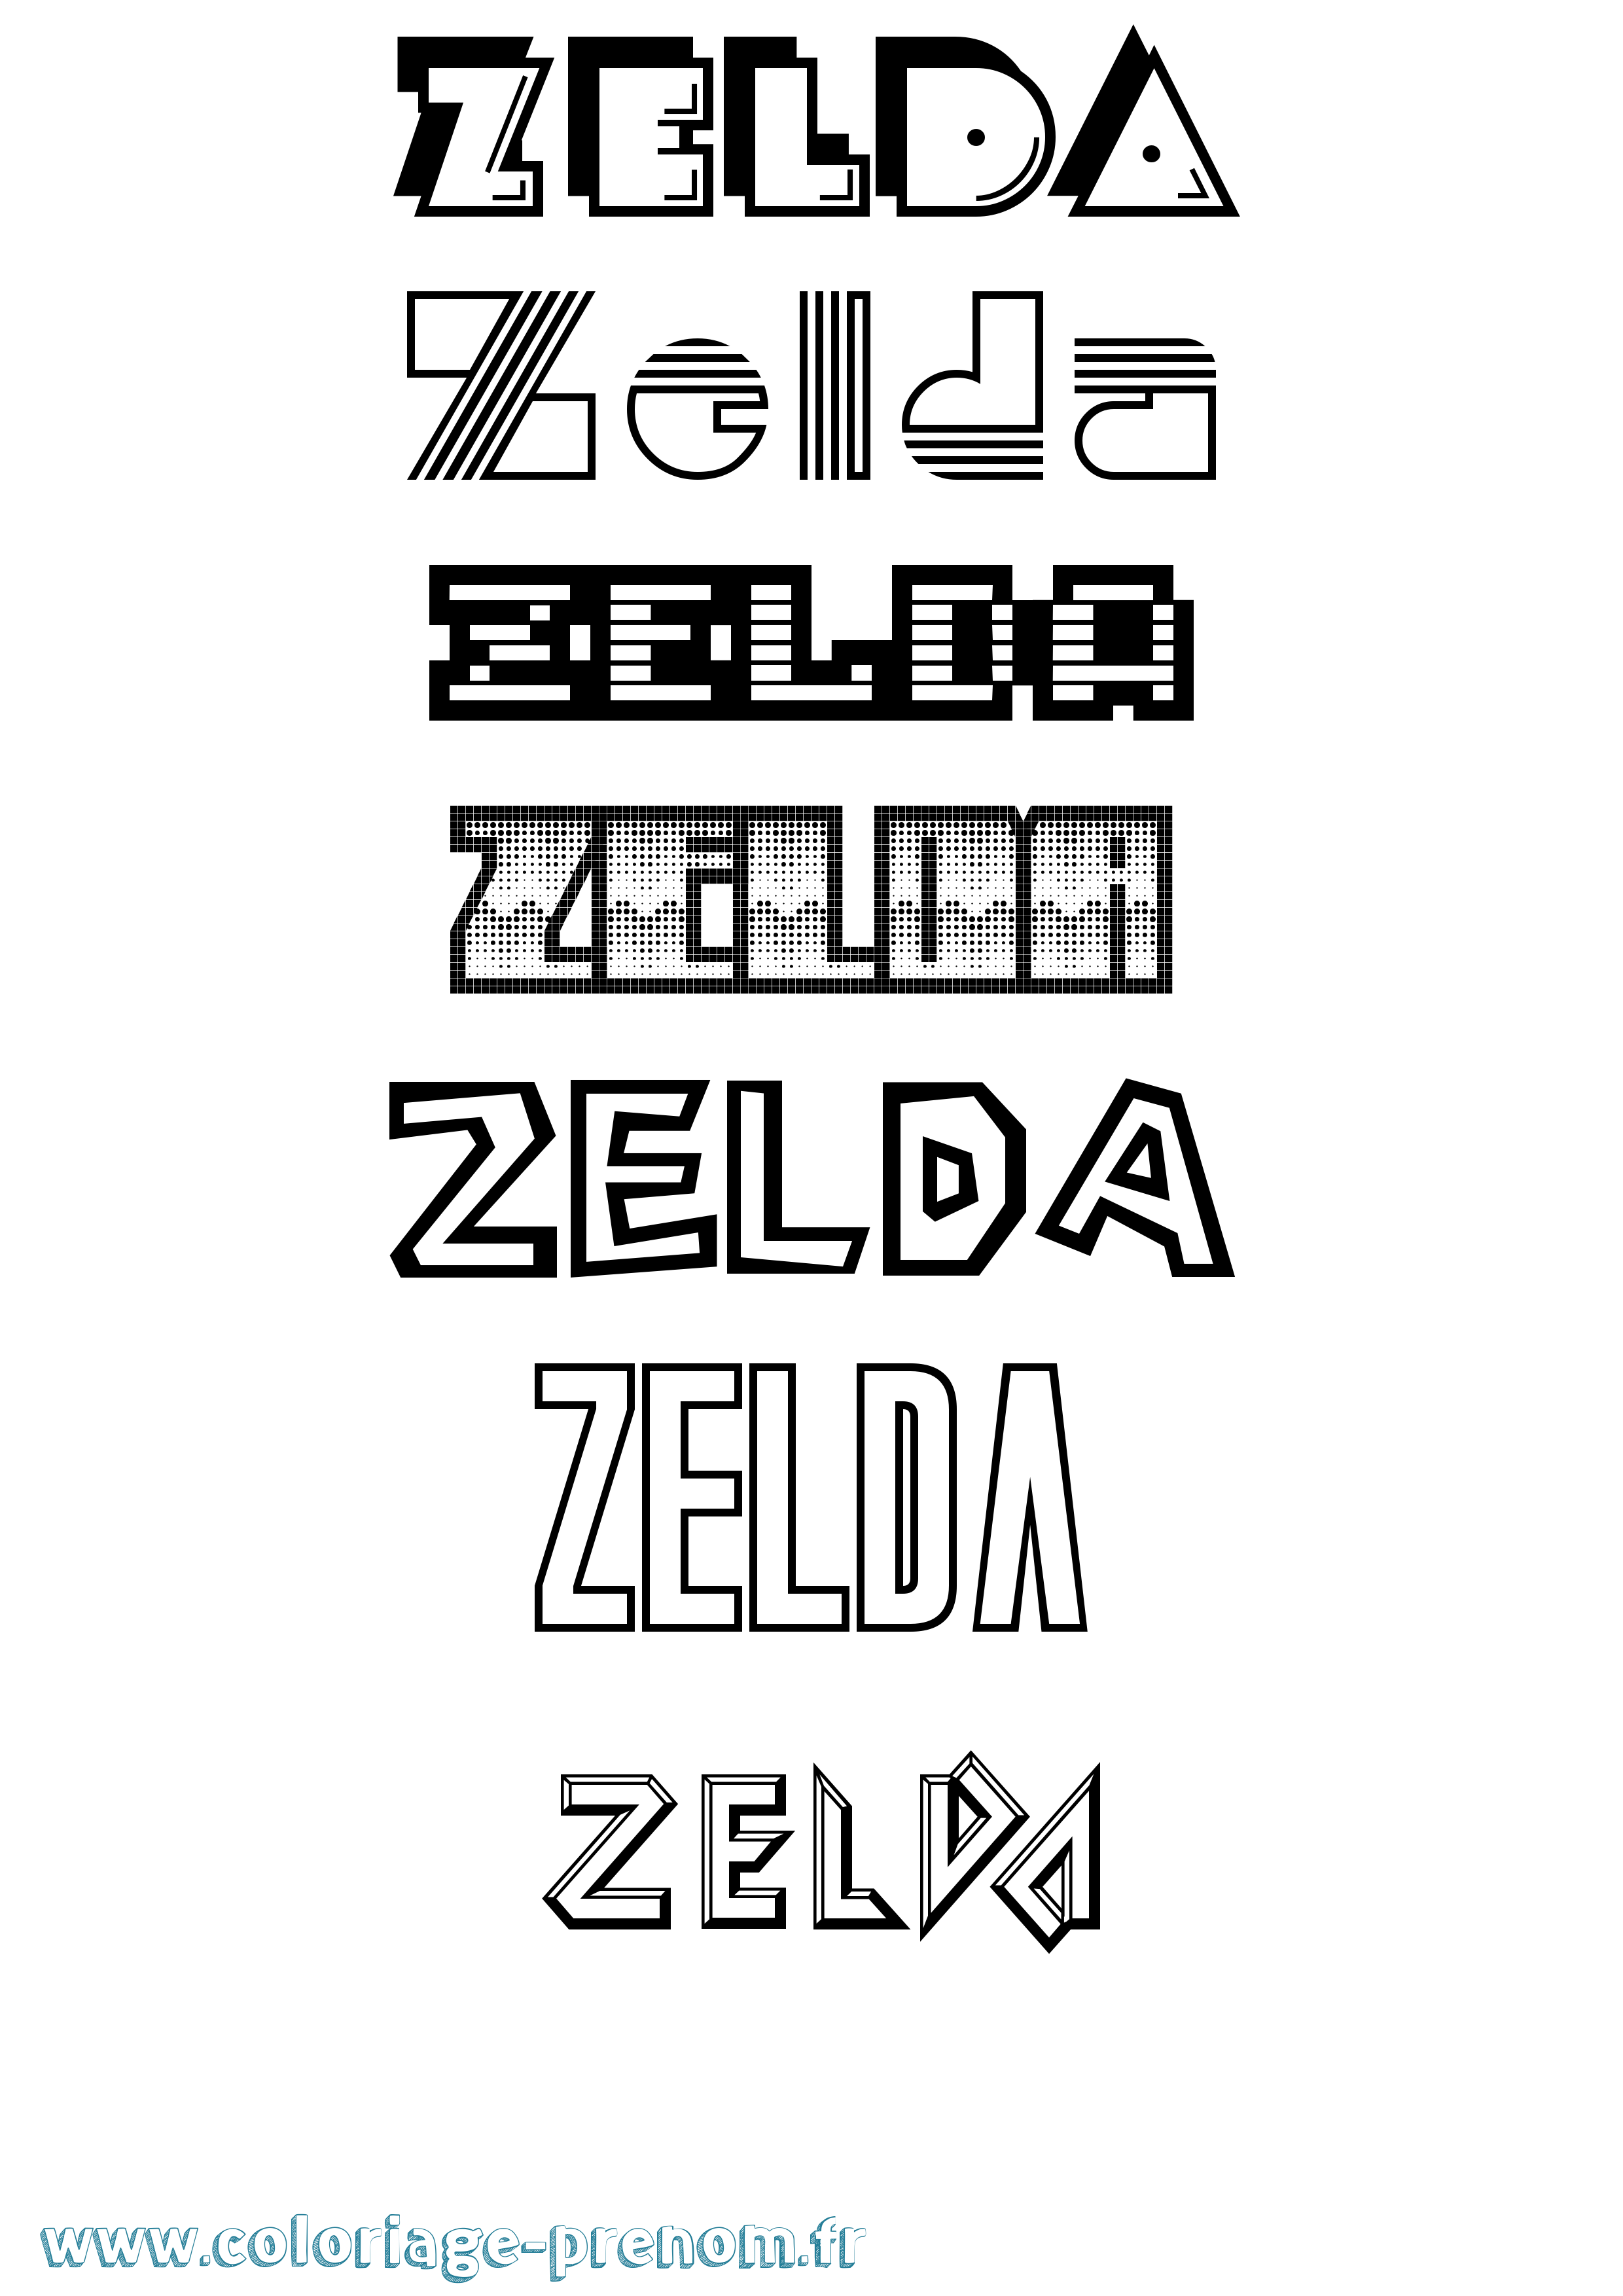 Coloriage prénom Zelda